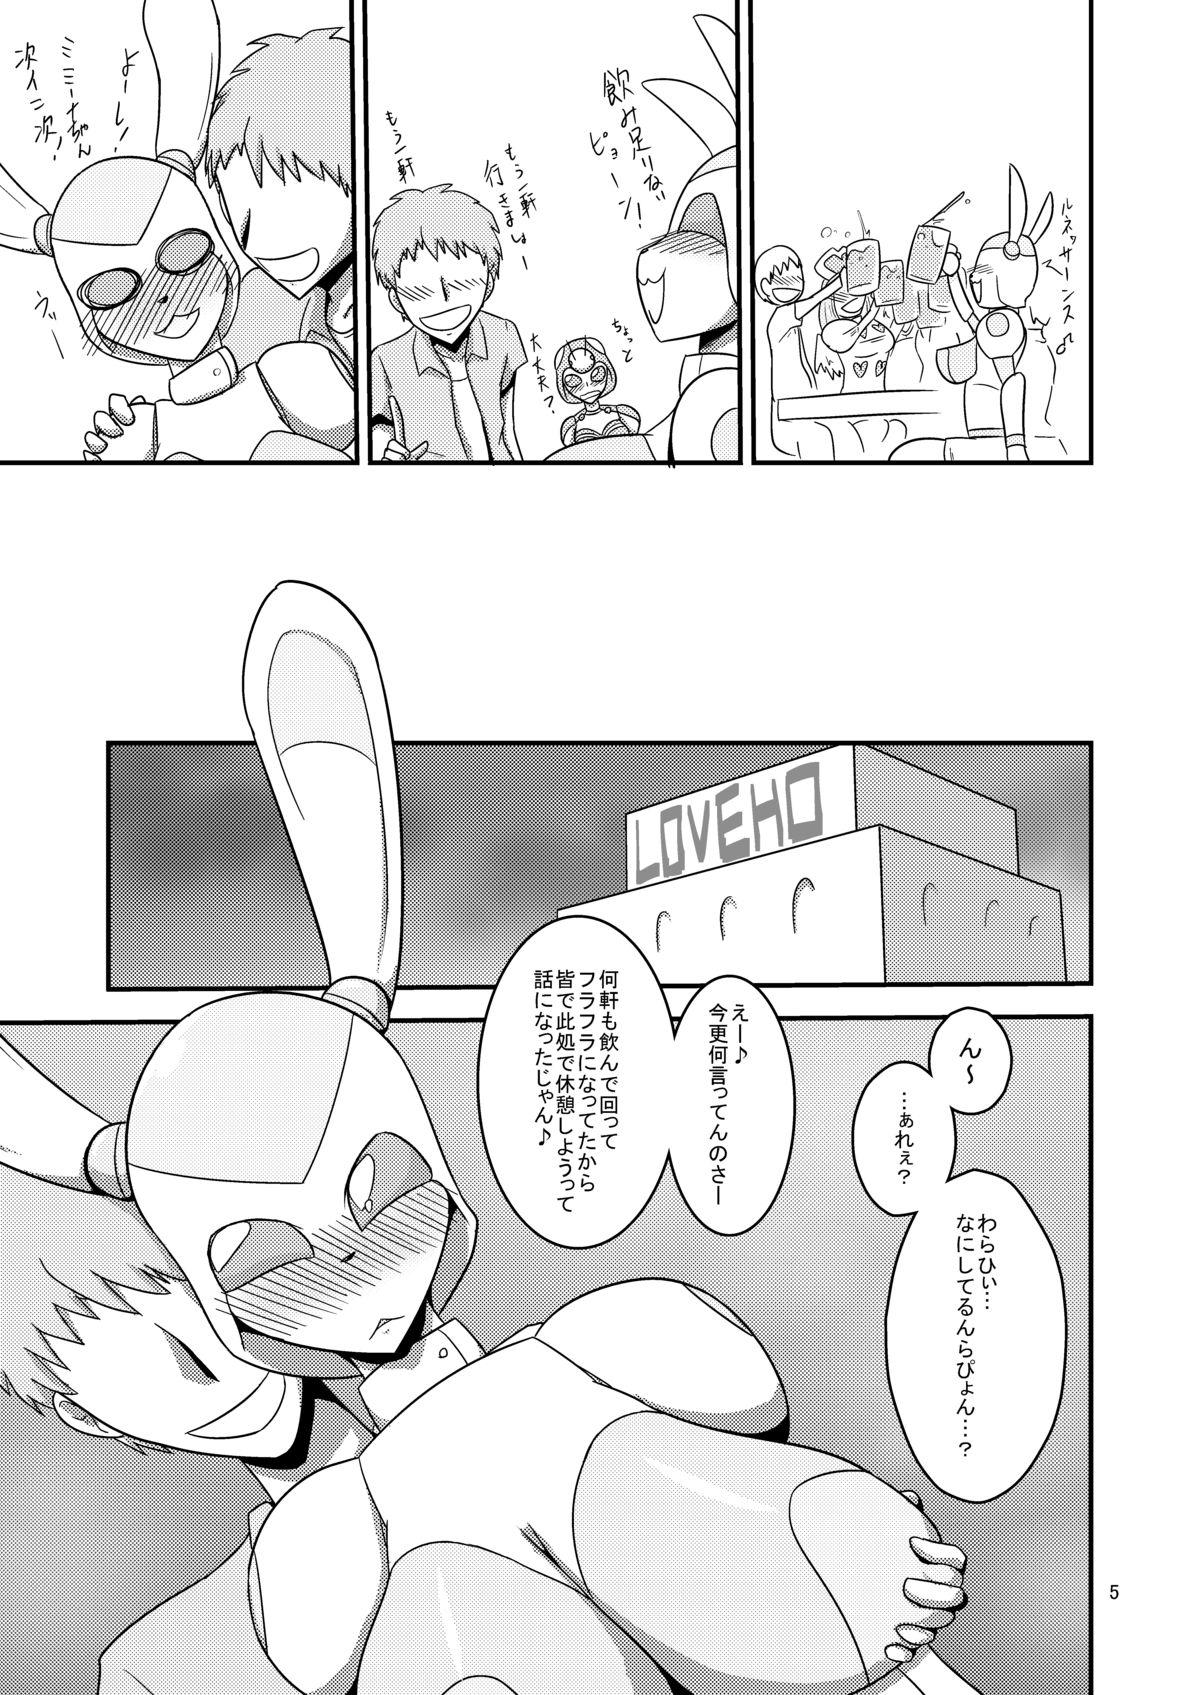 Hardcore NichiAsa Deisui Robot Bitch! Salope - Page 6